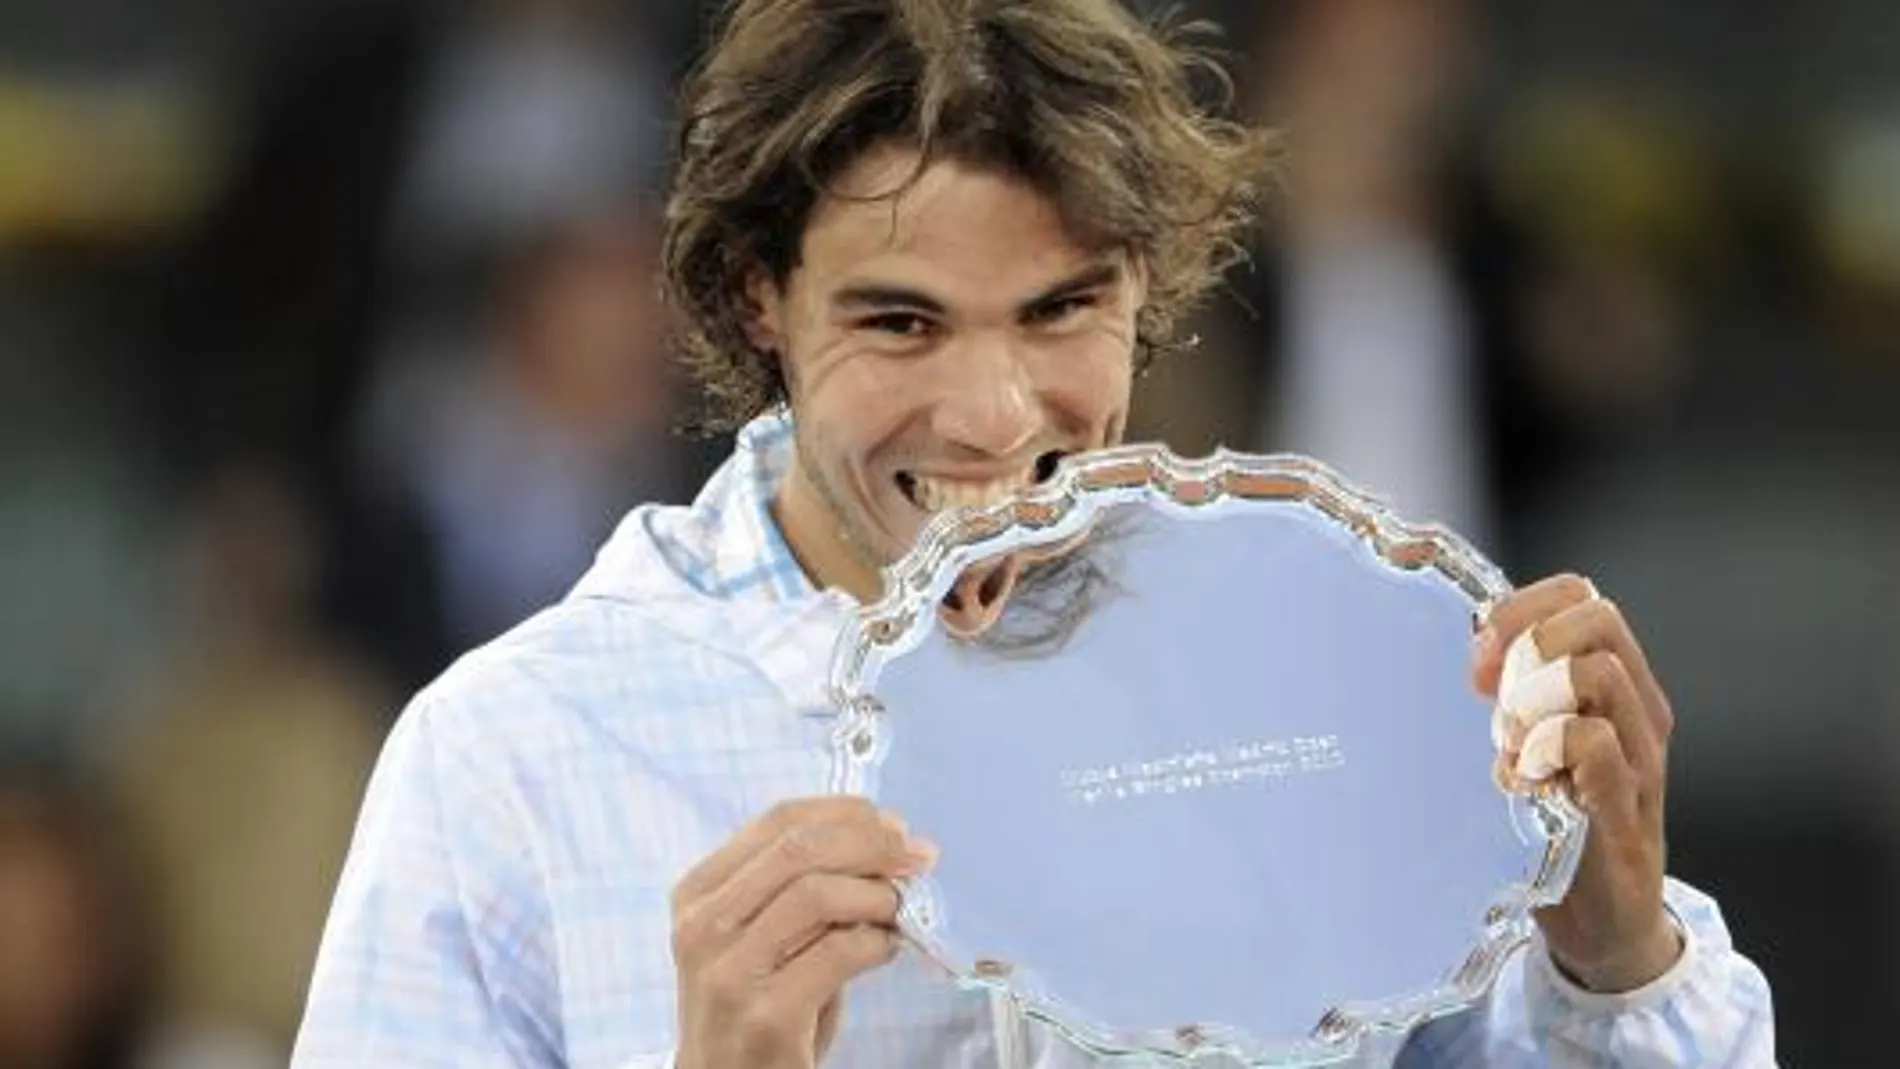 El tenista español Rafa Nadal muerde el trofeo tras ganar al suizo Roger Federer